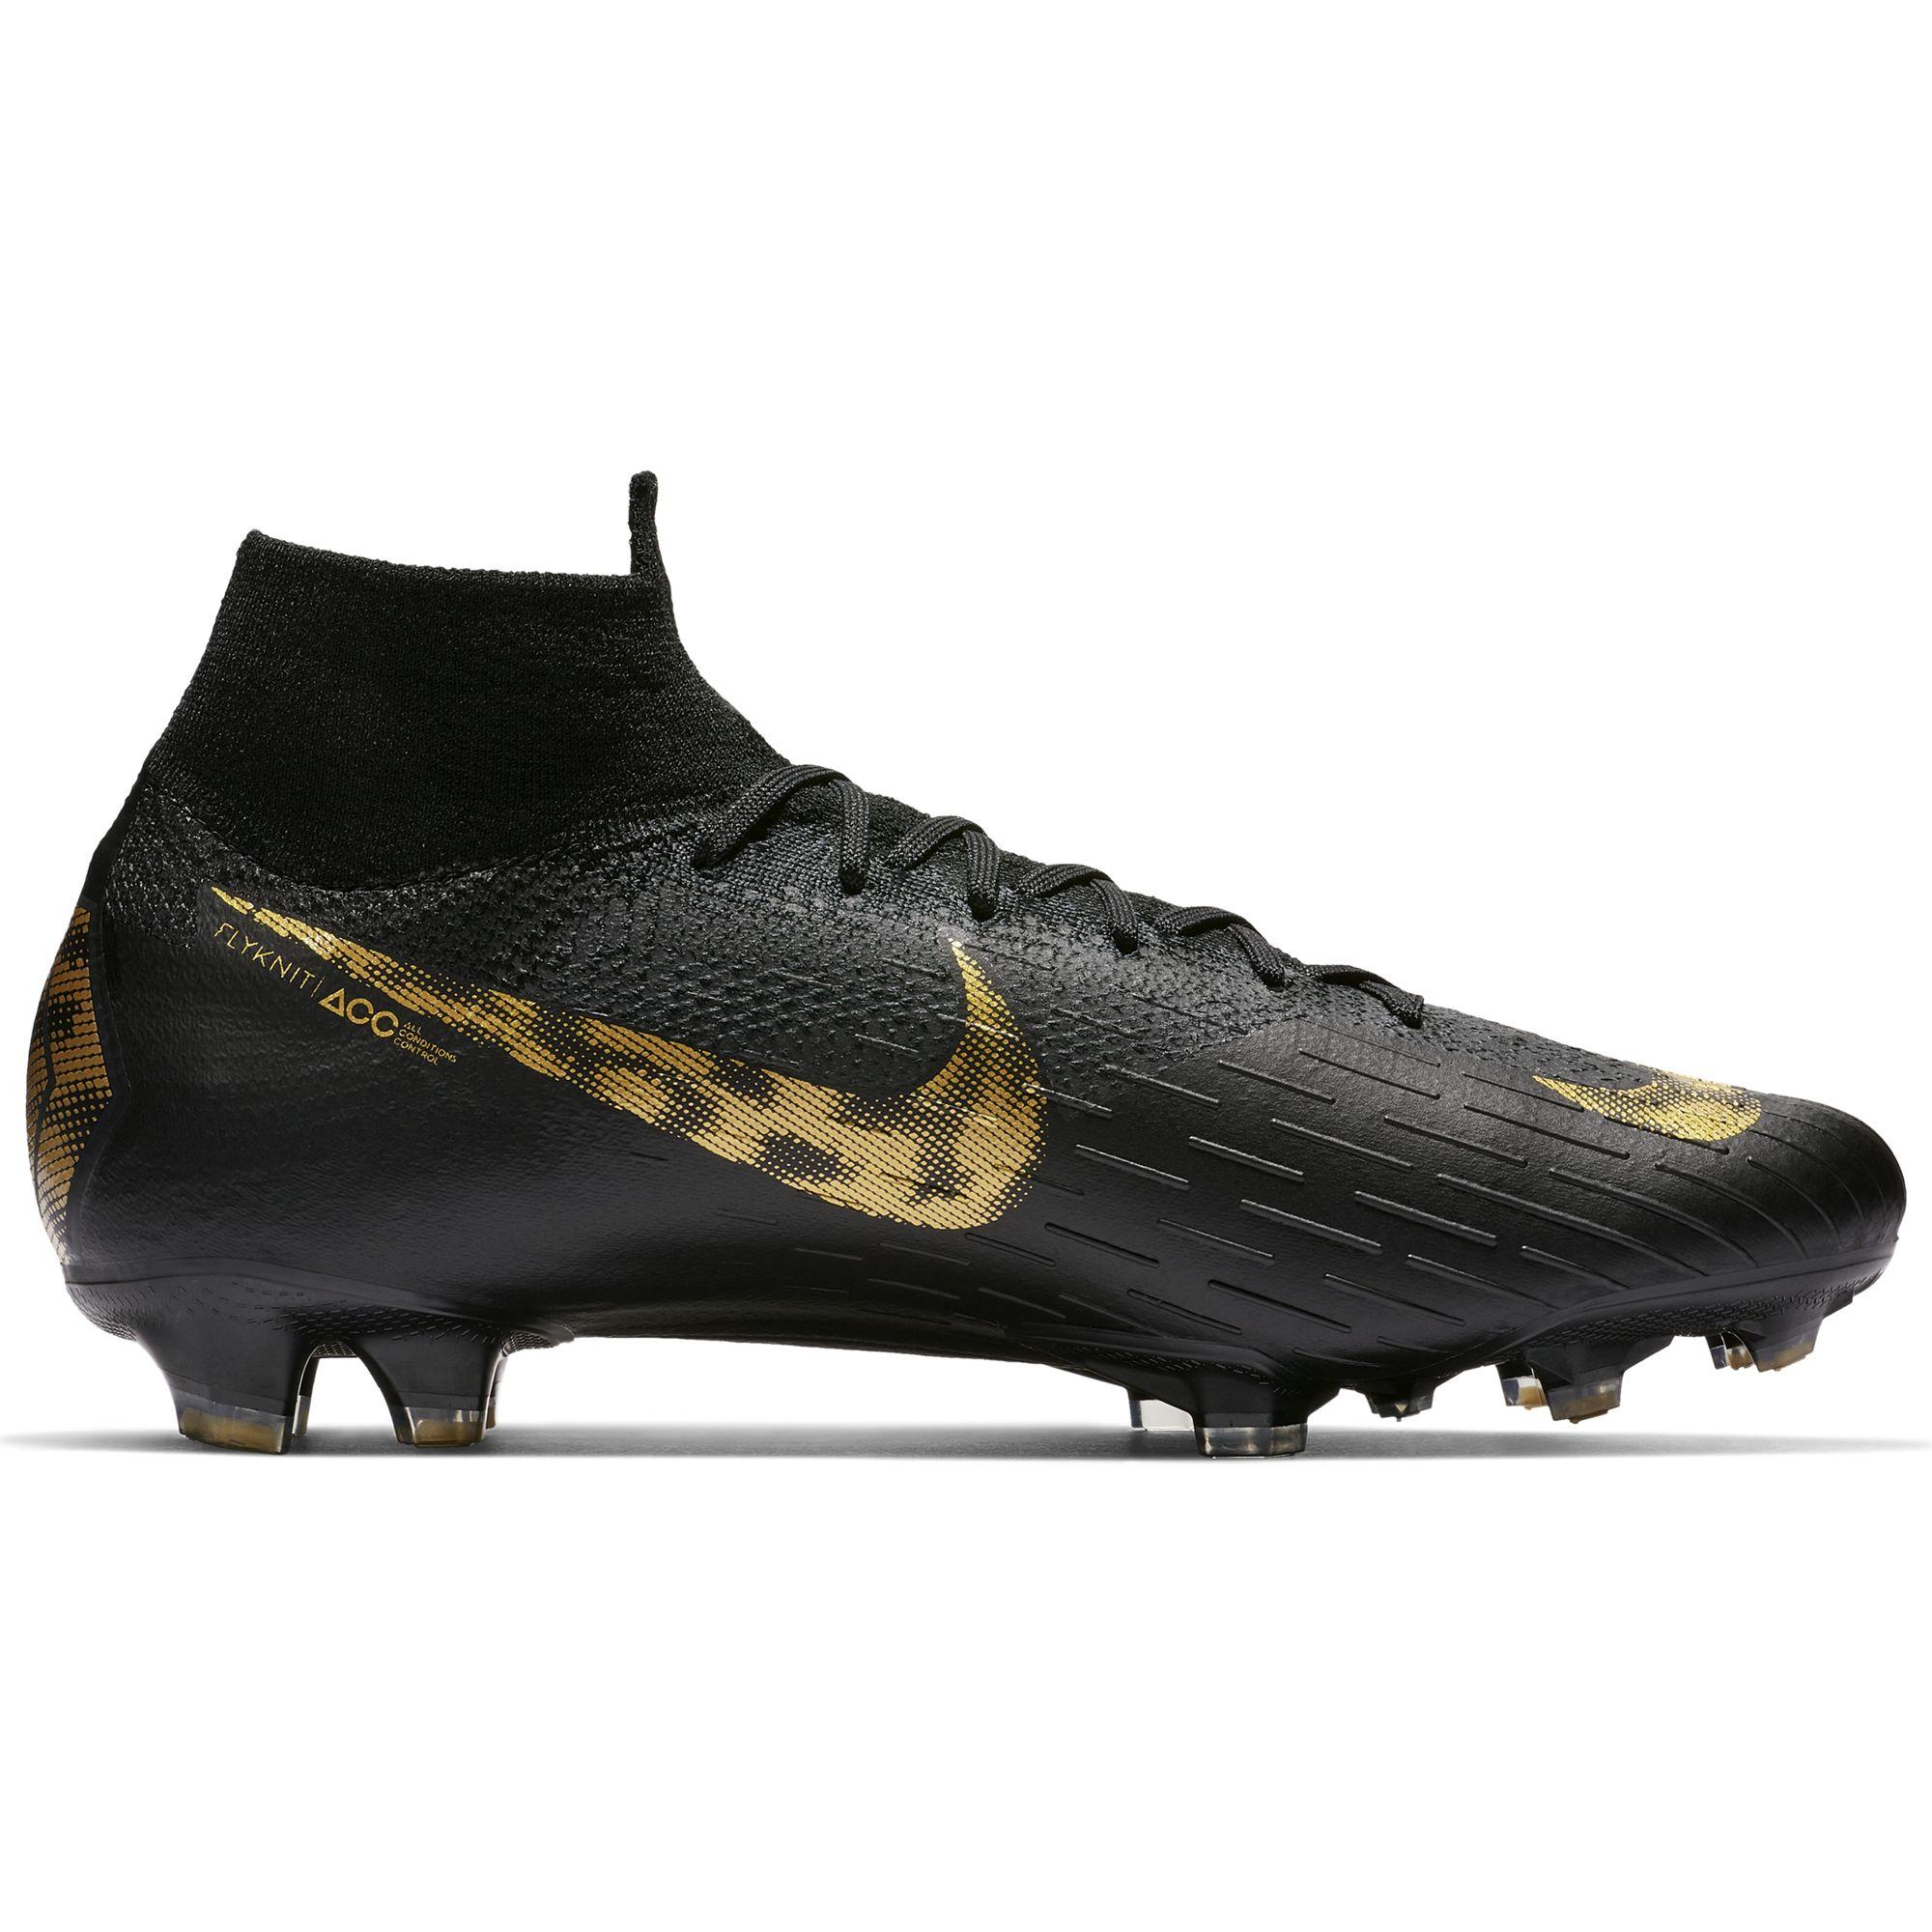 Nike Football Shoes Superfly 6 Elite Fg